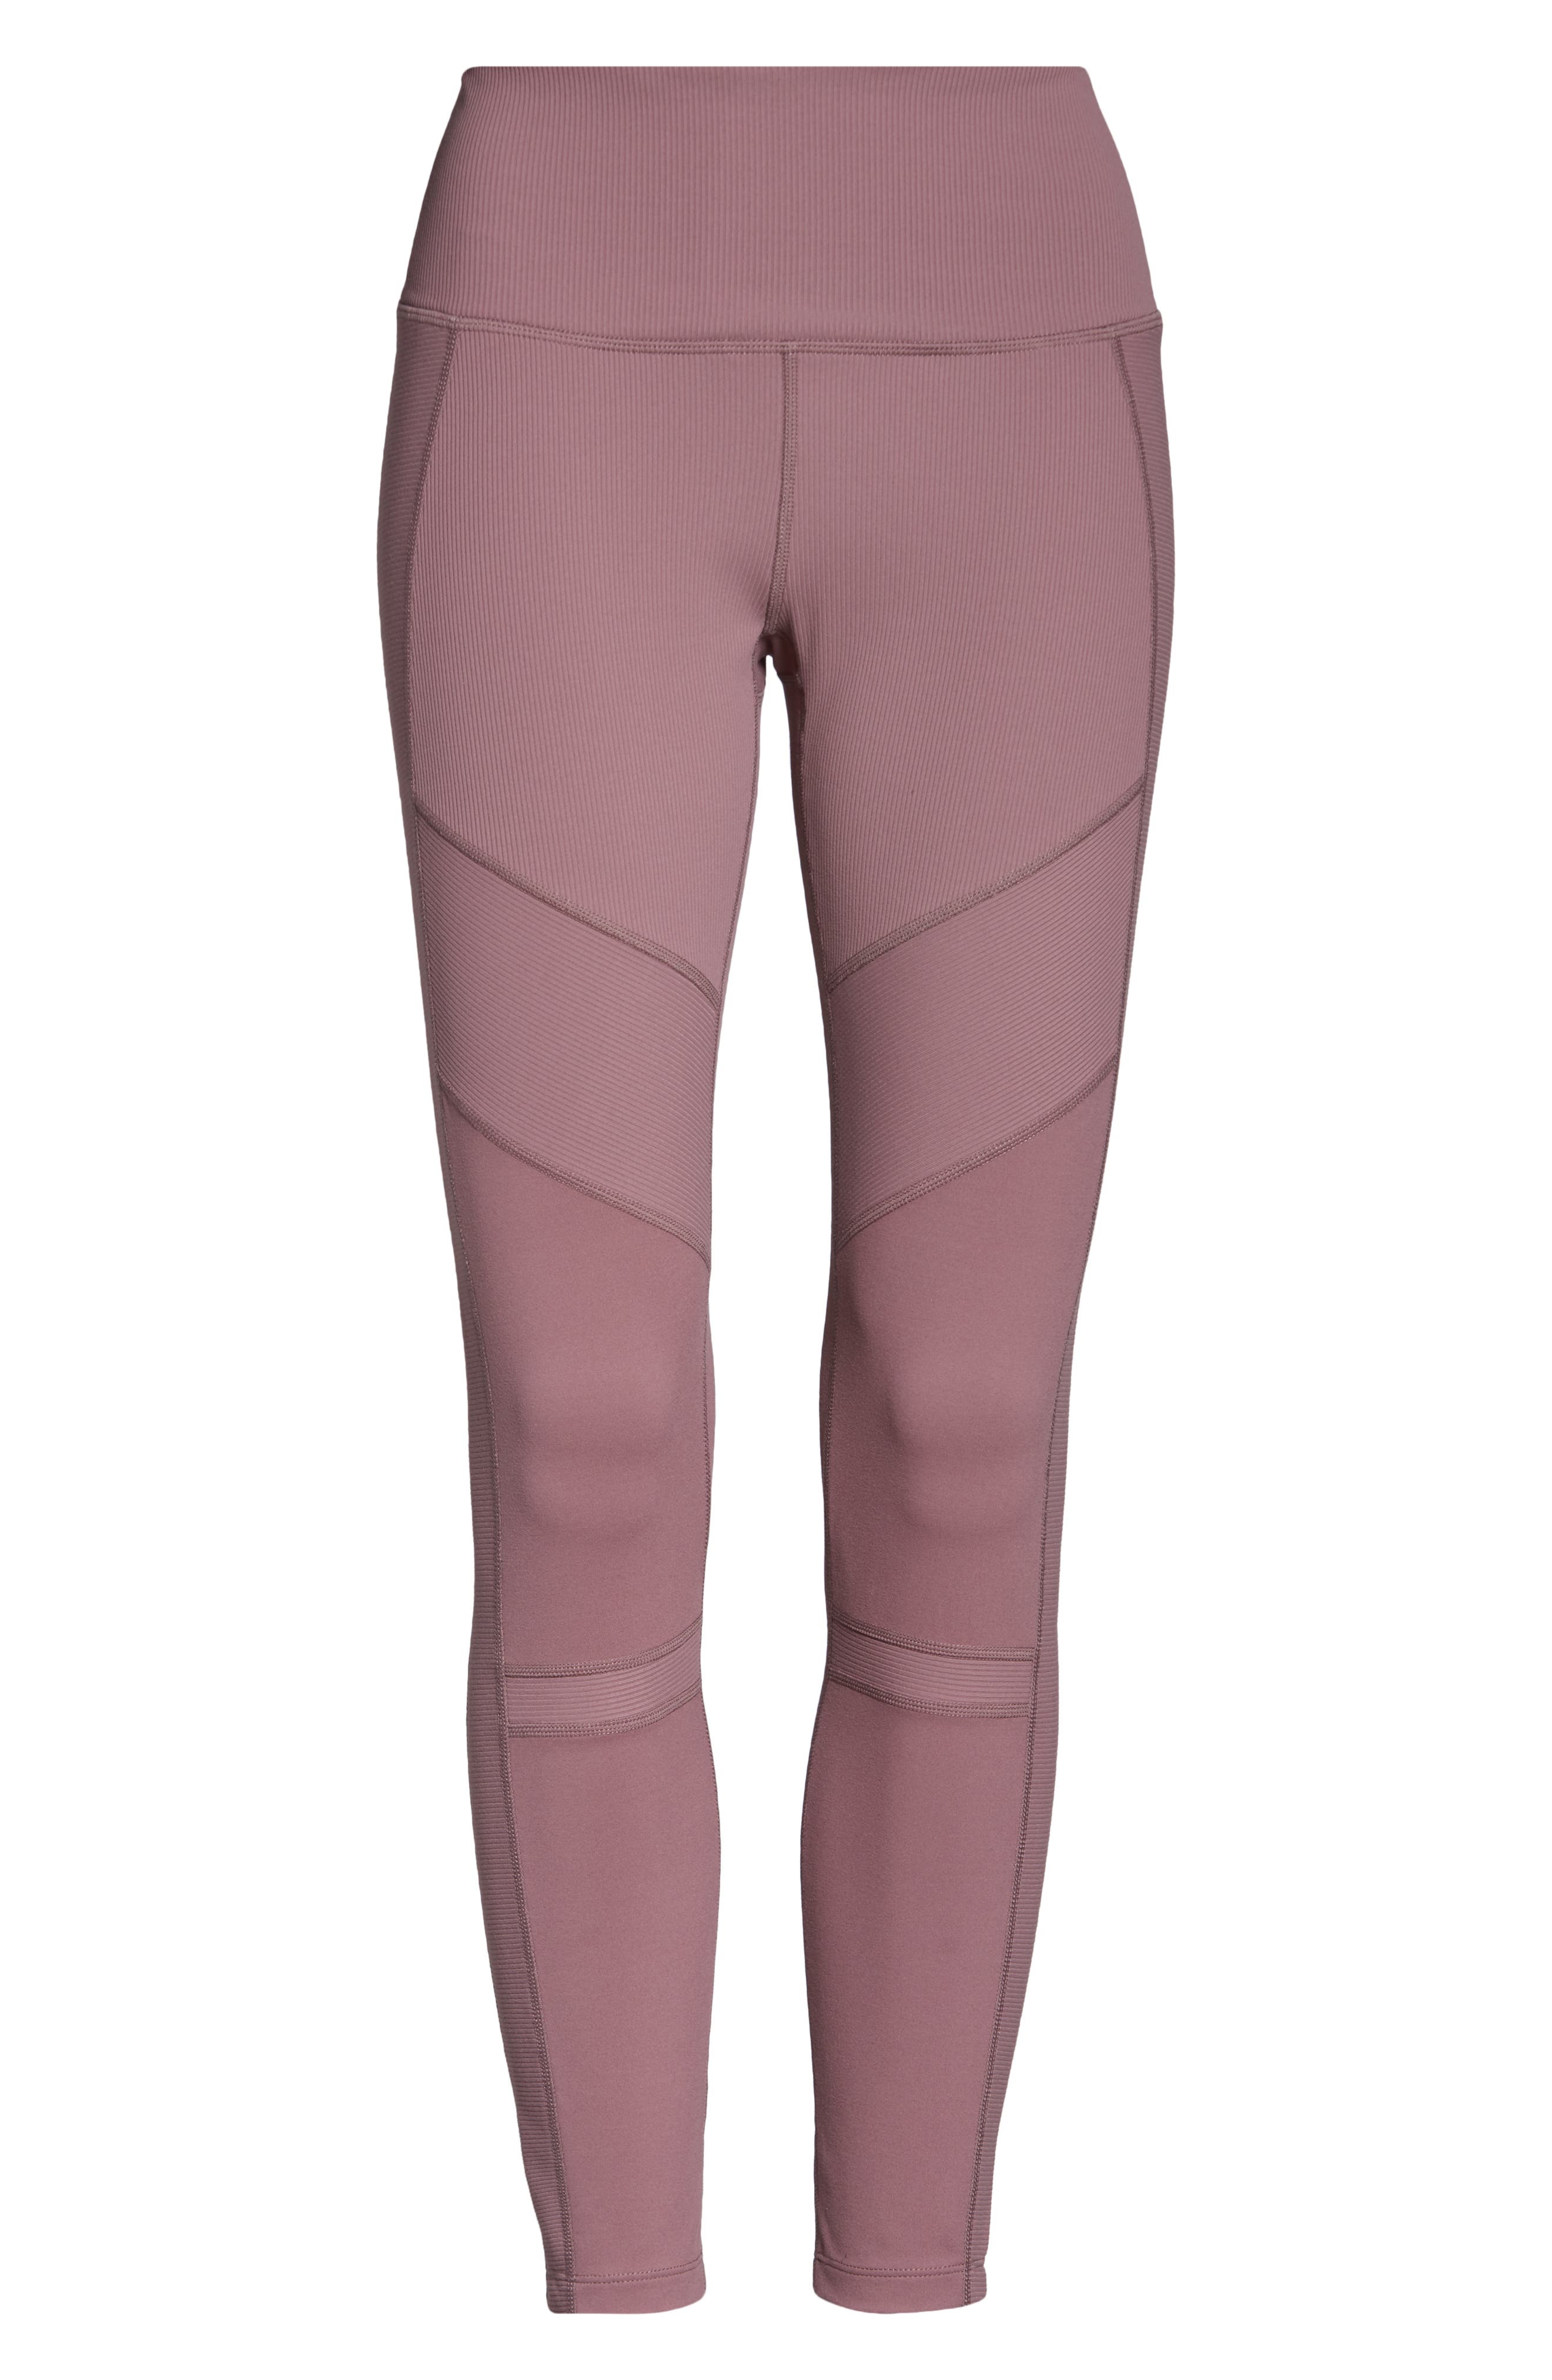 small ZELLA pink leggings #leggings #pinkleggings - Depop